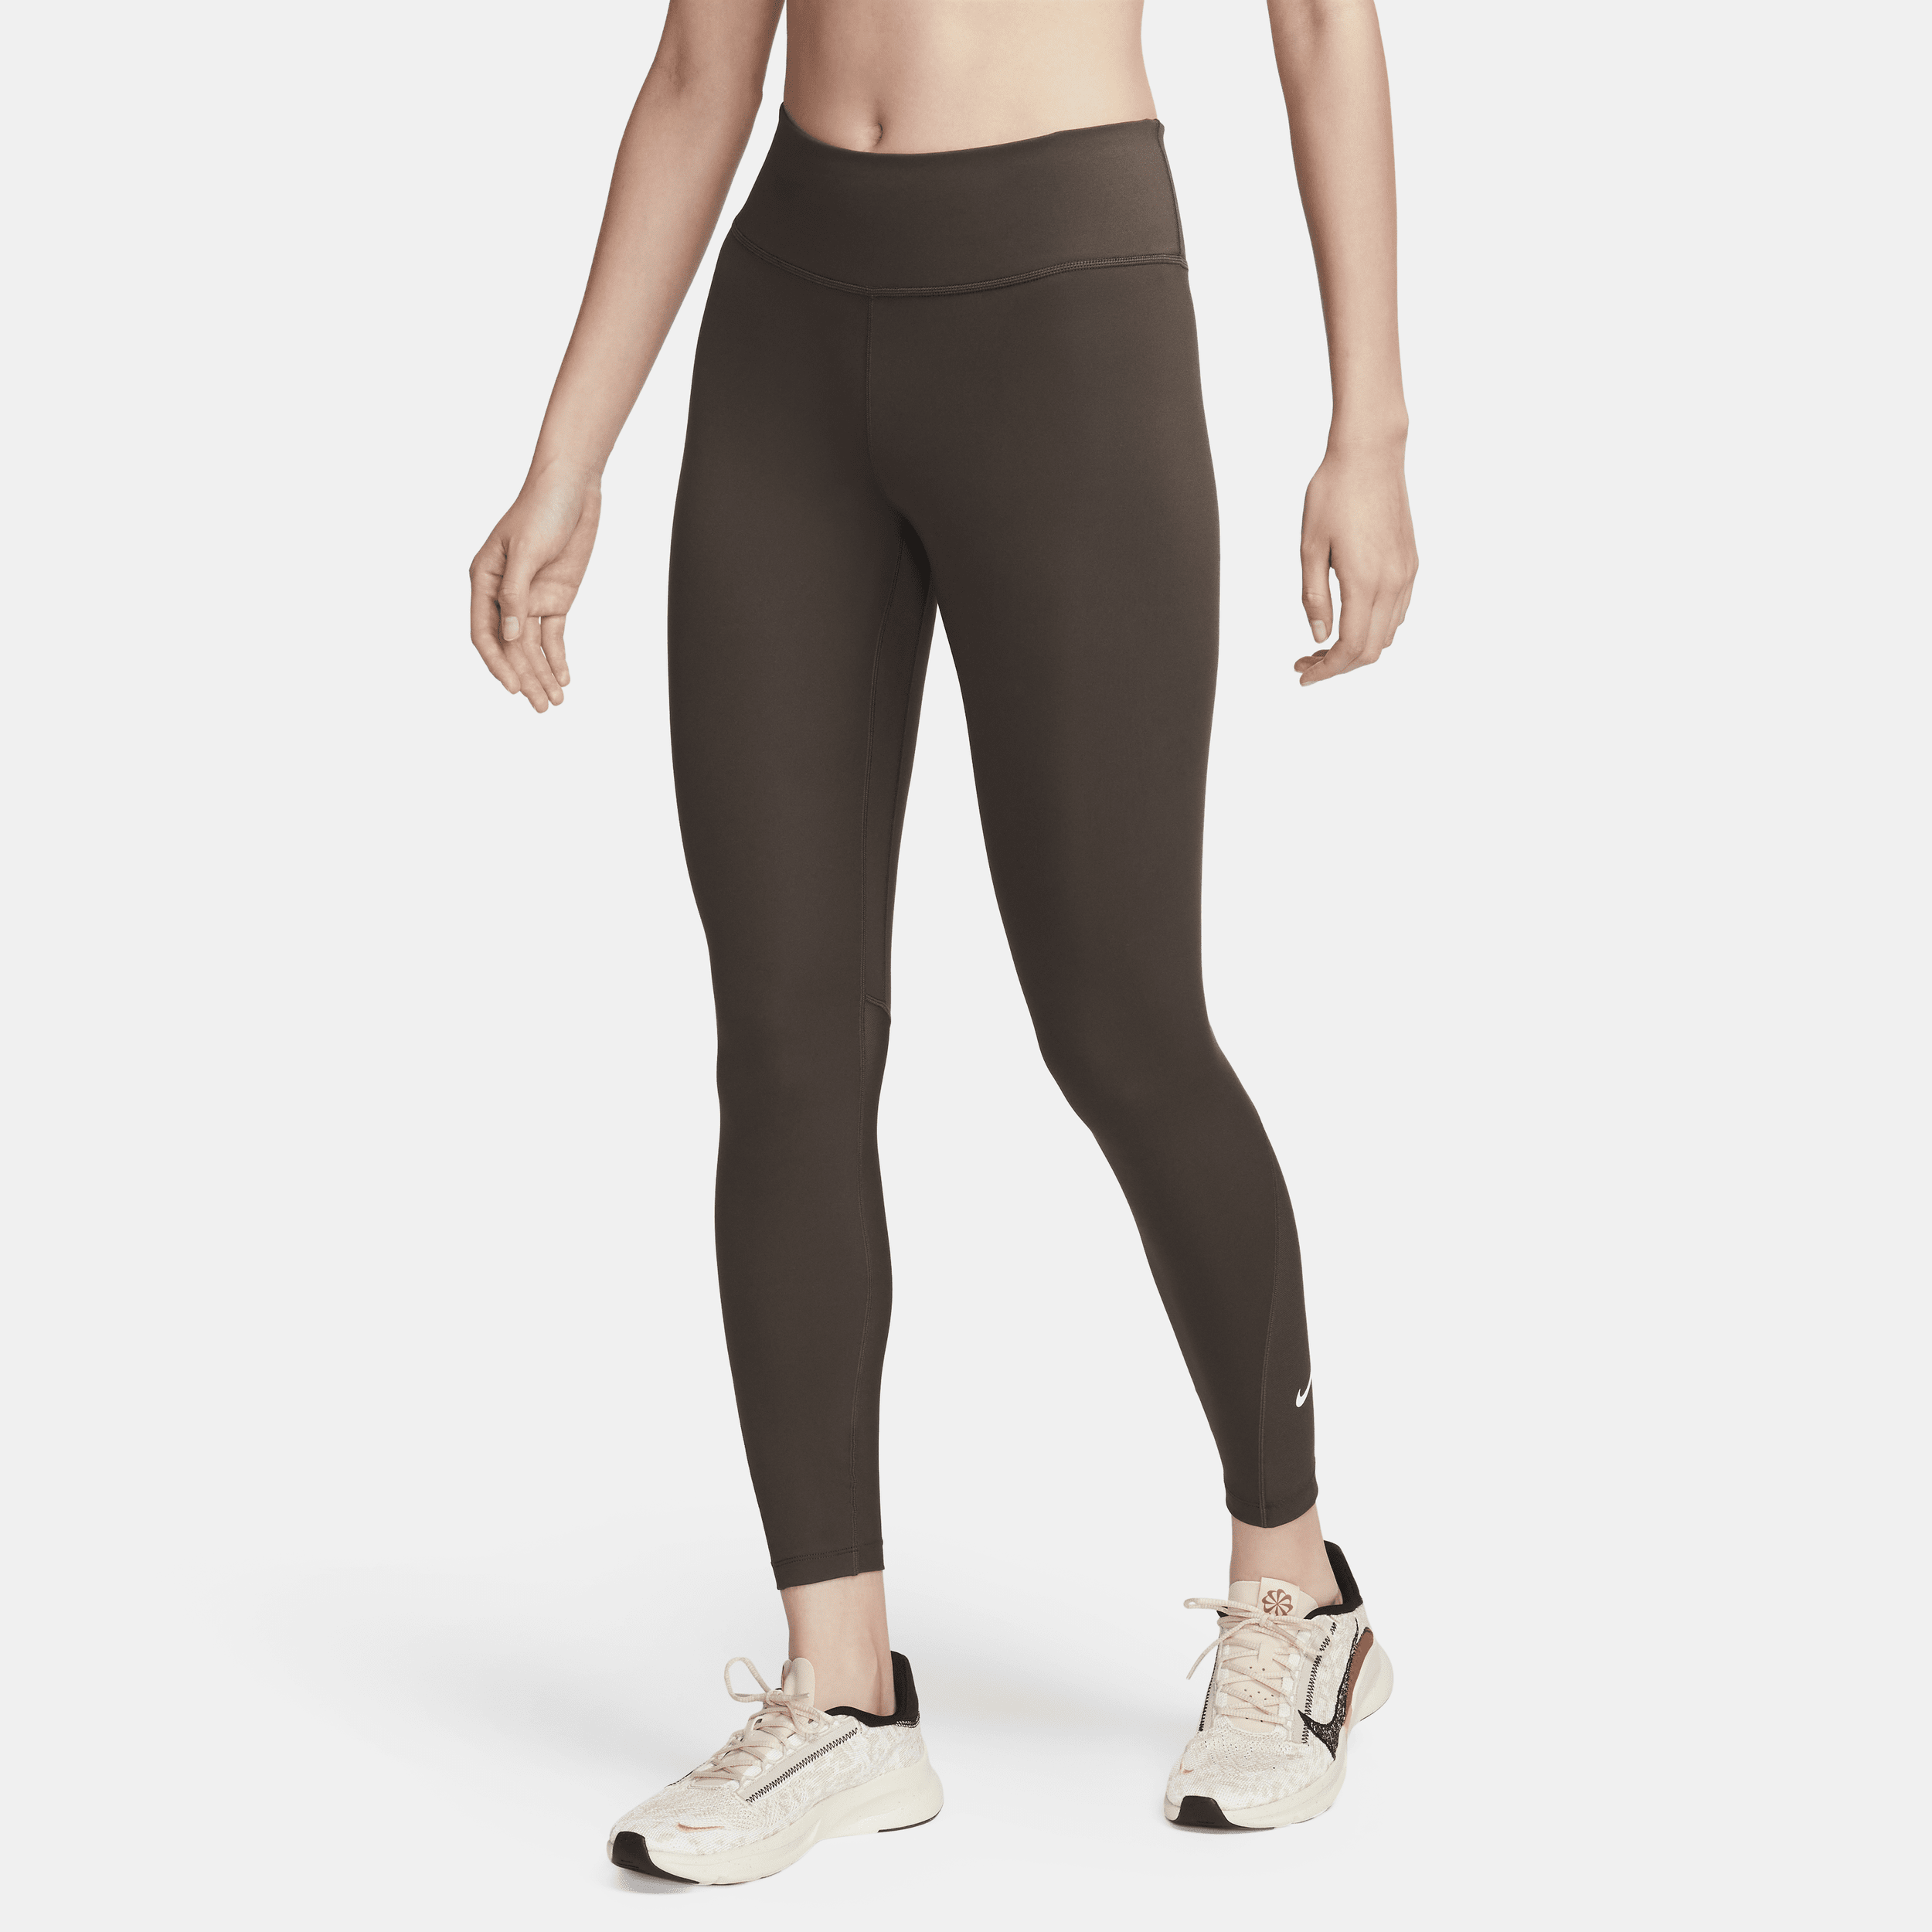 Nike One Leggings de 7/8 talle medio con paneles de malla - Mujer - Marrón